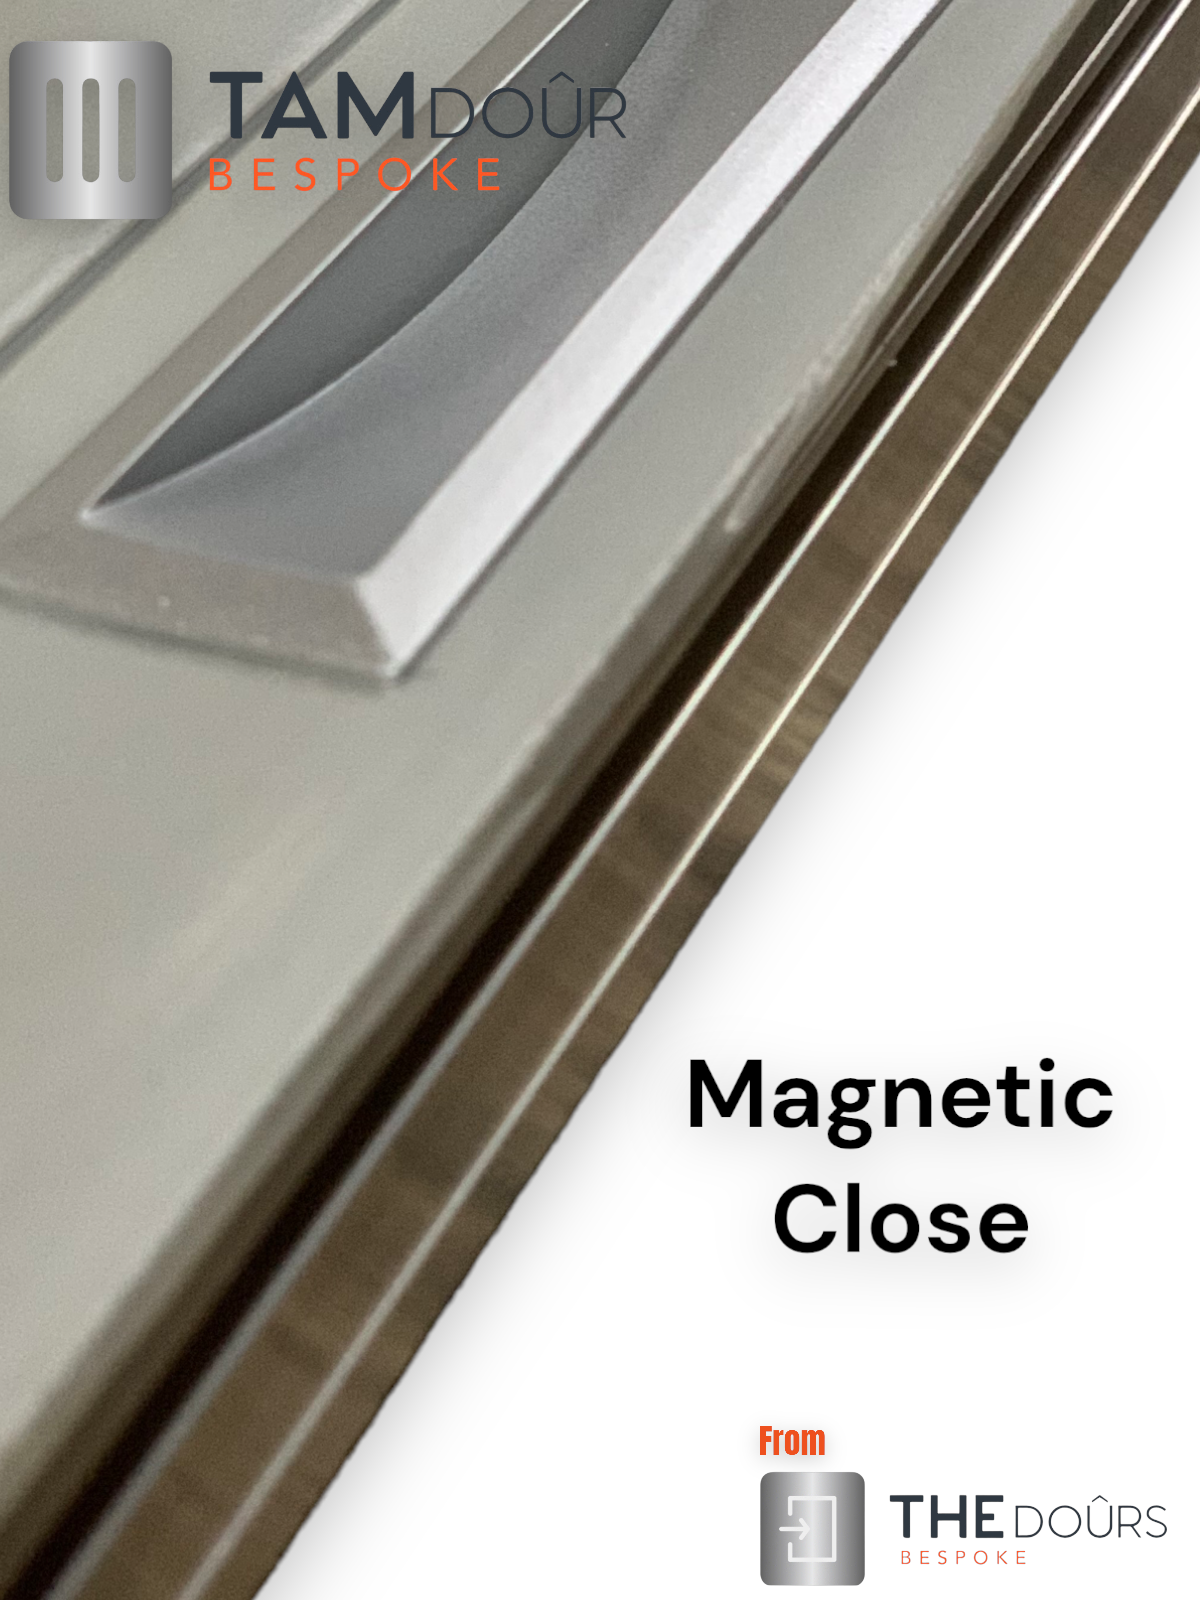 Kit de puerta Tambour Silver - MANGO BLANCO 1500 mm a 2000 mm de altura